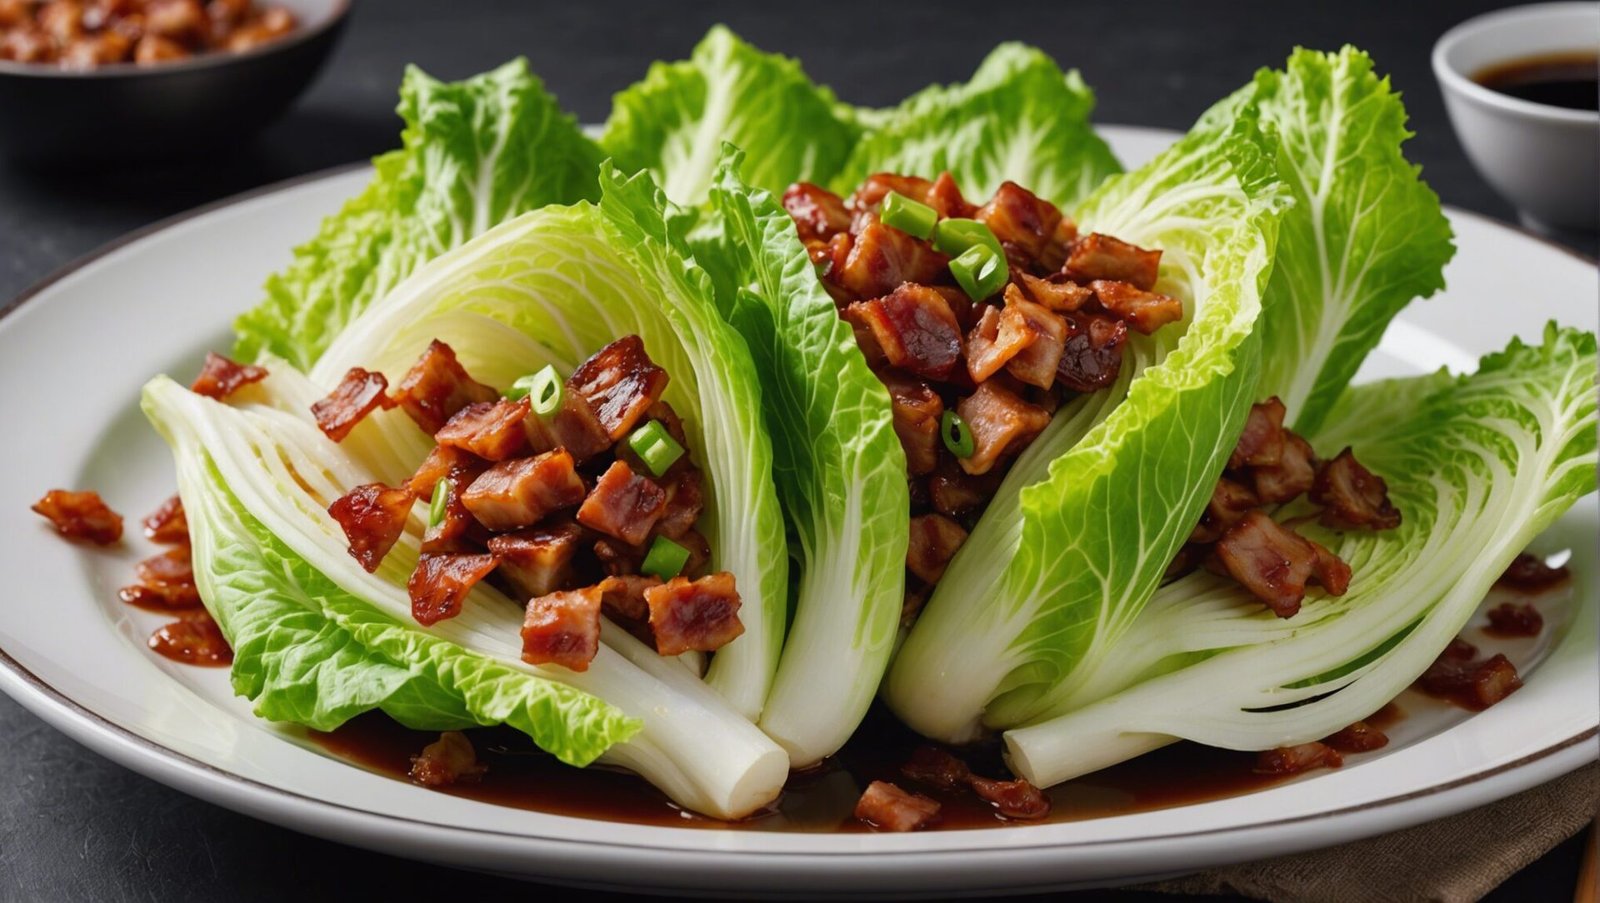 découvrez notre délicieuse recette de chou chinois aux lardons et à la sauce soja et apprenez comment la préparer facilement chez vous !